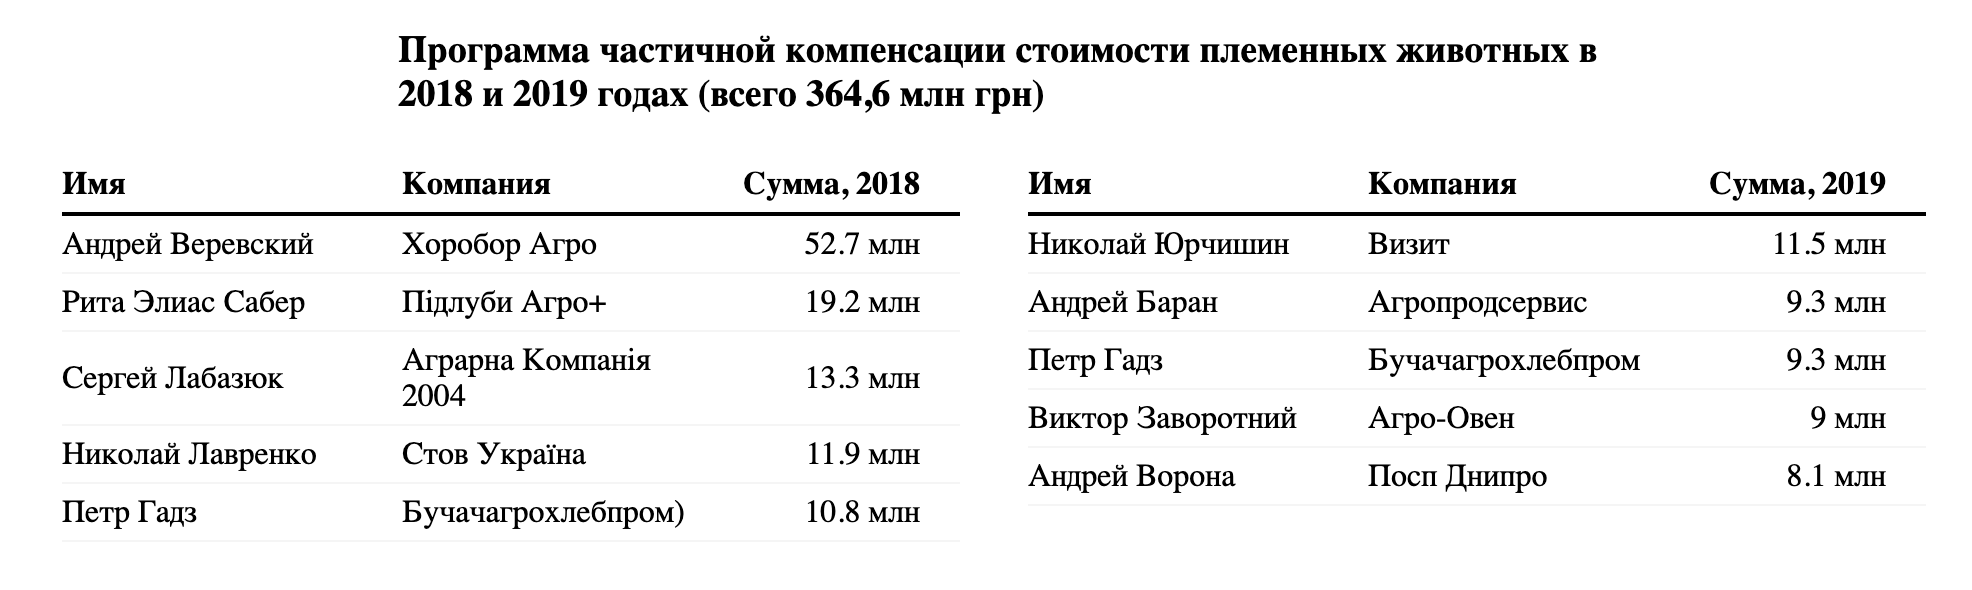 7,2 млрд госдотаций аграриям: кому достались деньги, кроме Косюка, Бахматюка и Колесникова